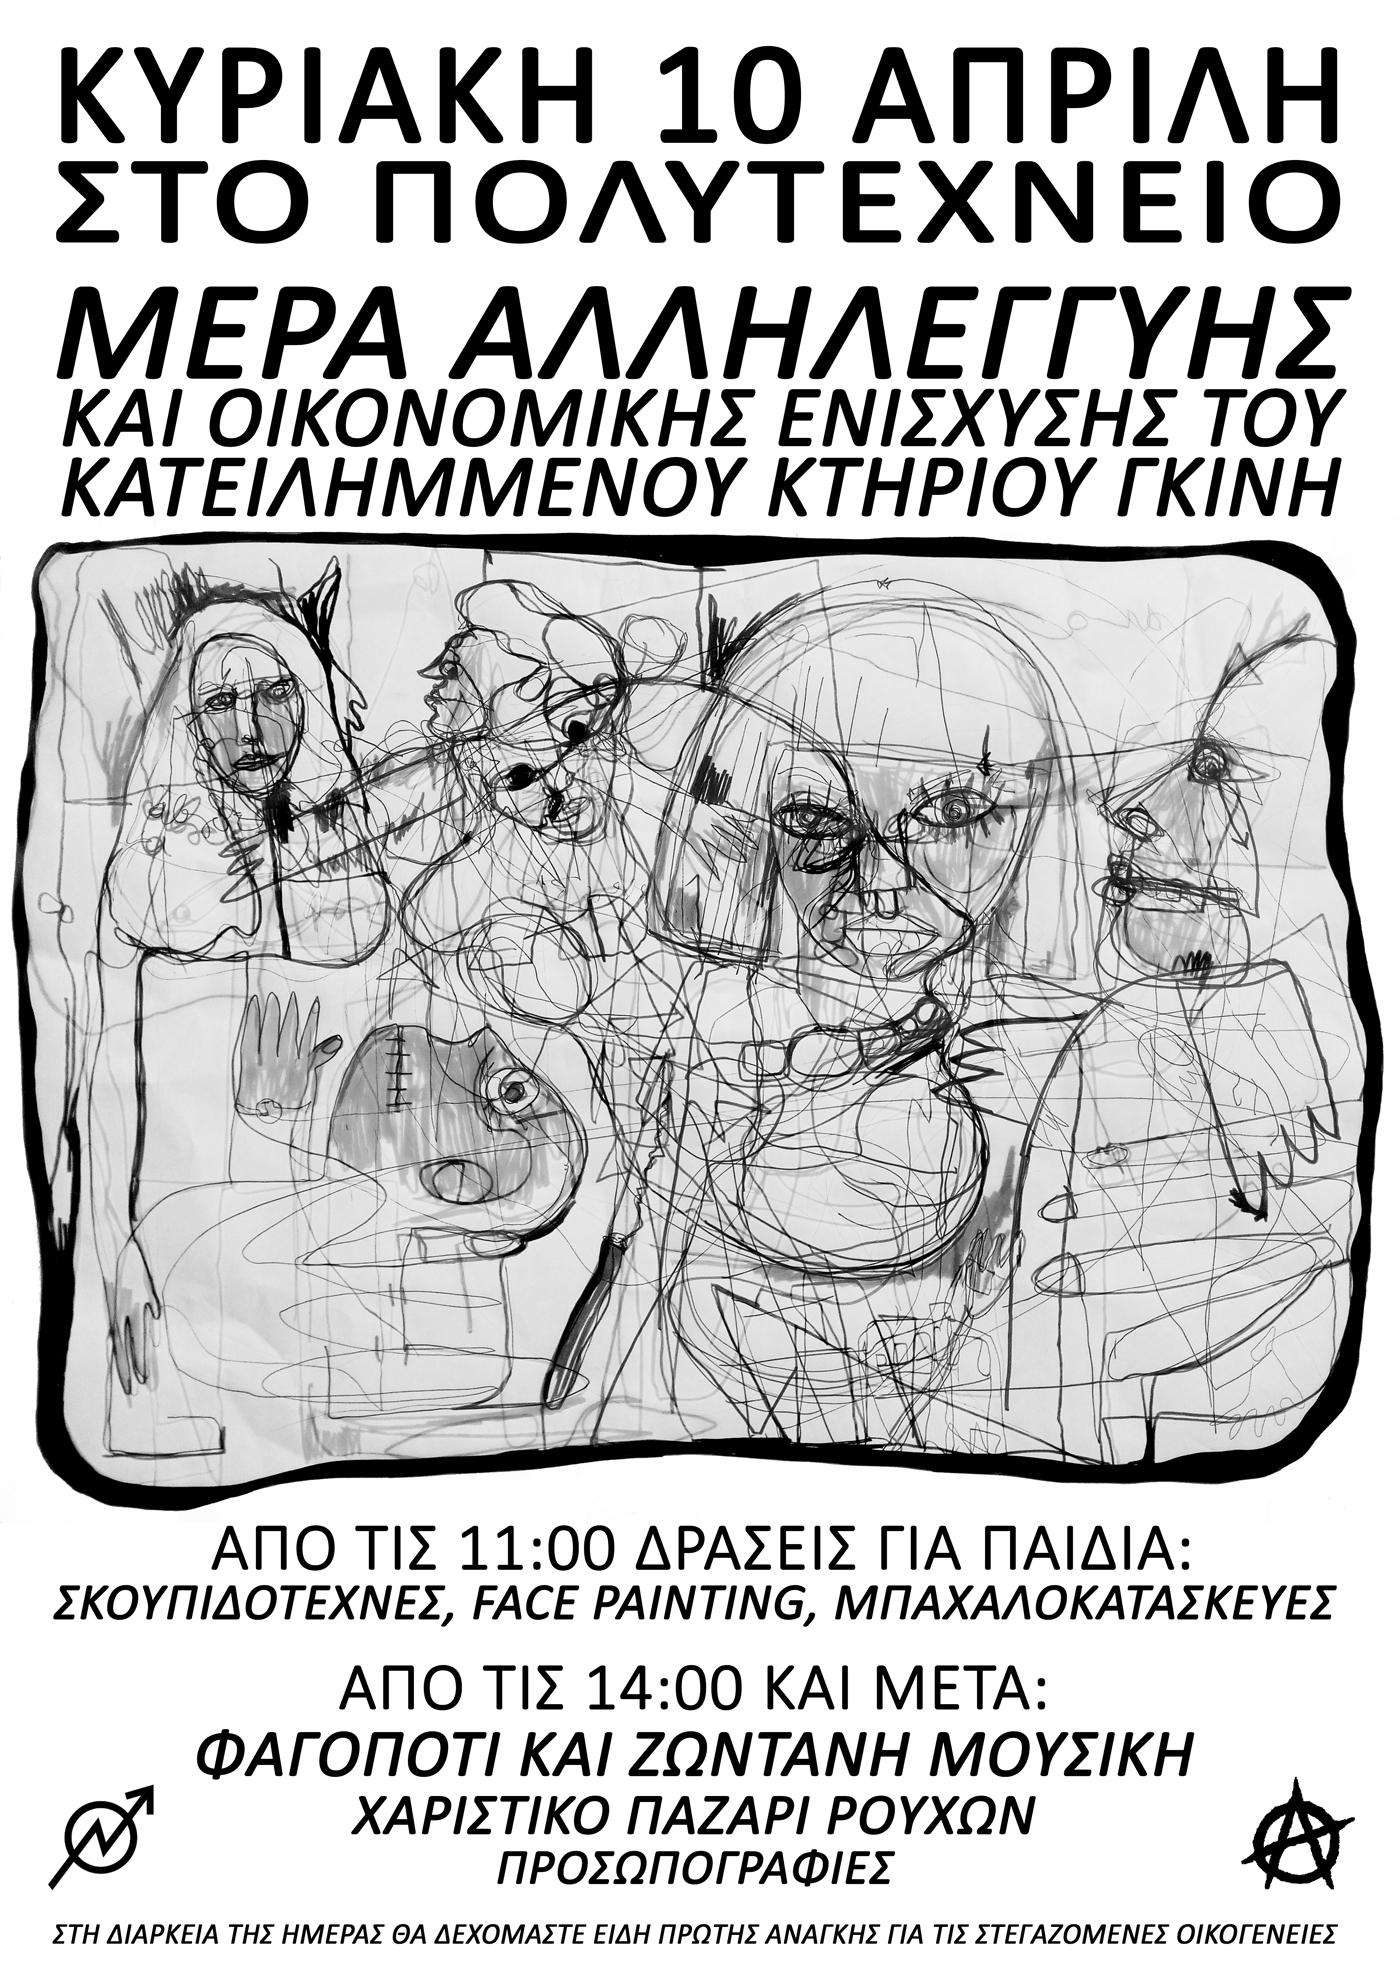 Αθήνα: Μέρα αλληλεγγύης και οικονομικής ενίσχυσης του κατειλημμένου κτηρίου Γκίνη